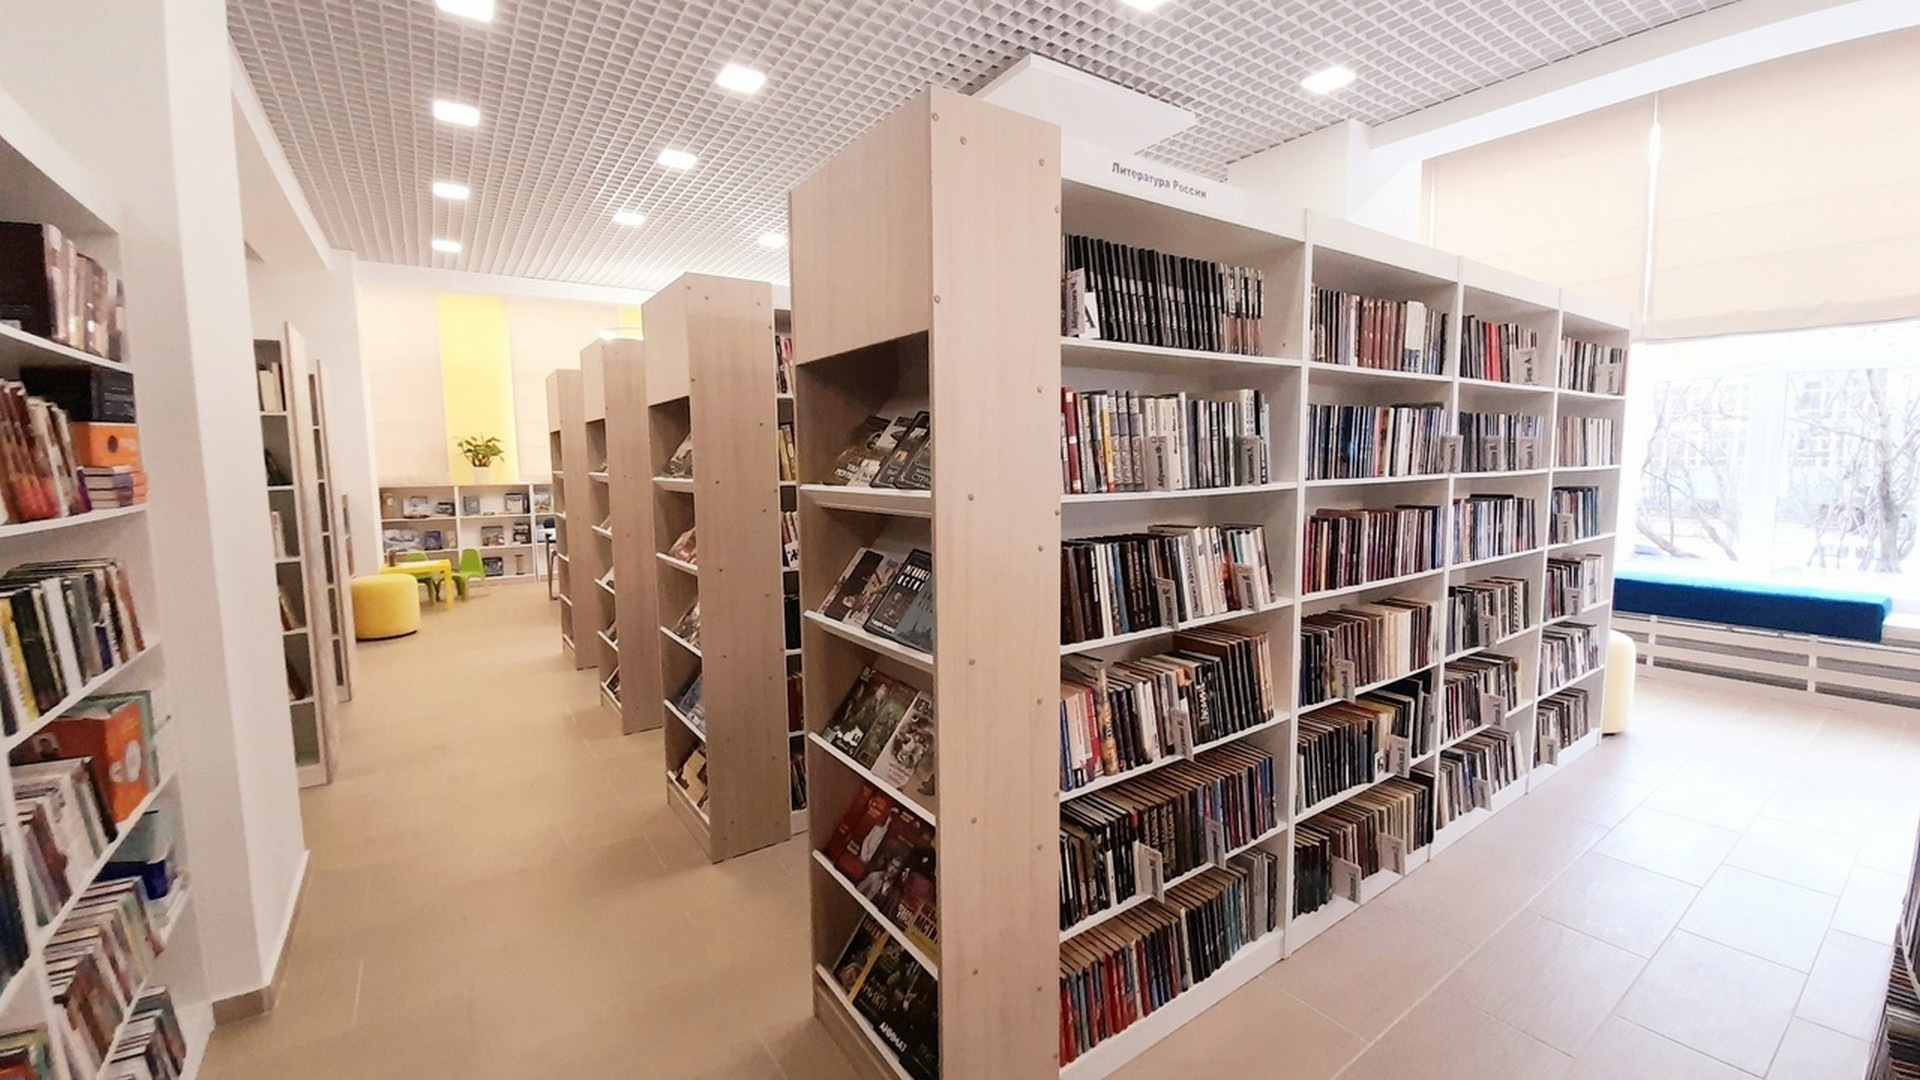 Библиотека 4 часть. Библиотека Воркута. Центральная библиотека Воркута. Библиотека нового поколения. Модельная библиотека нового поколения.